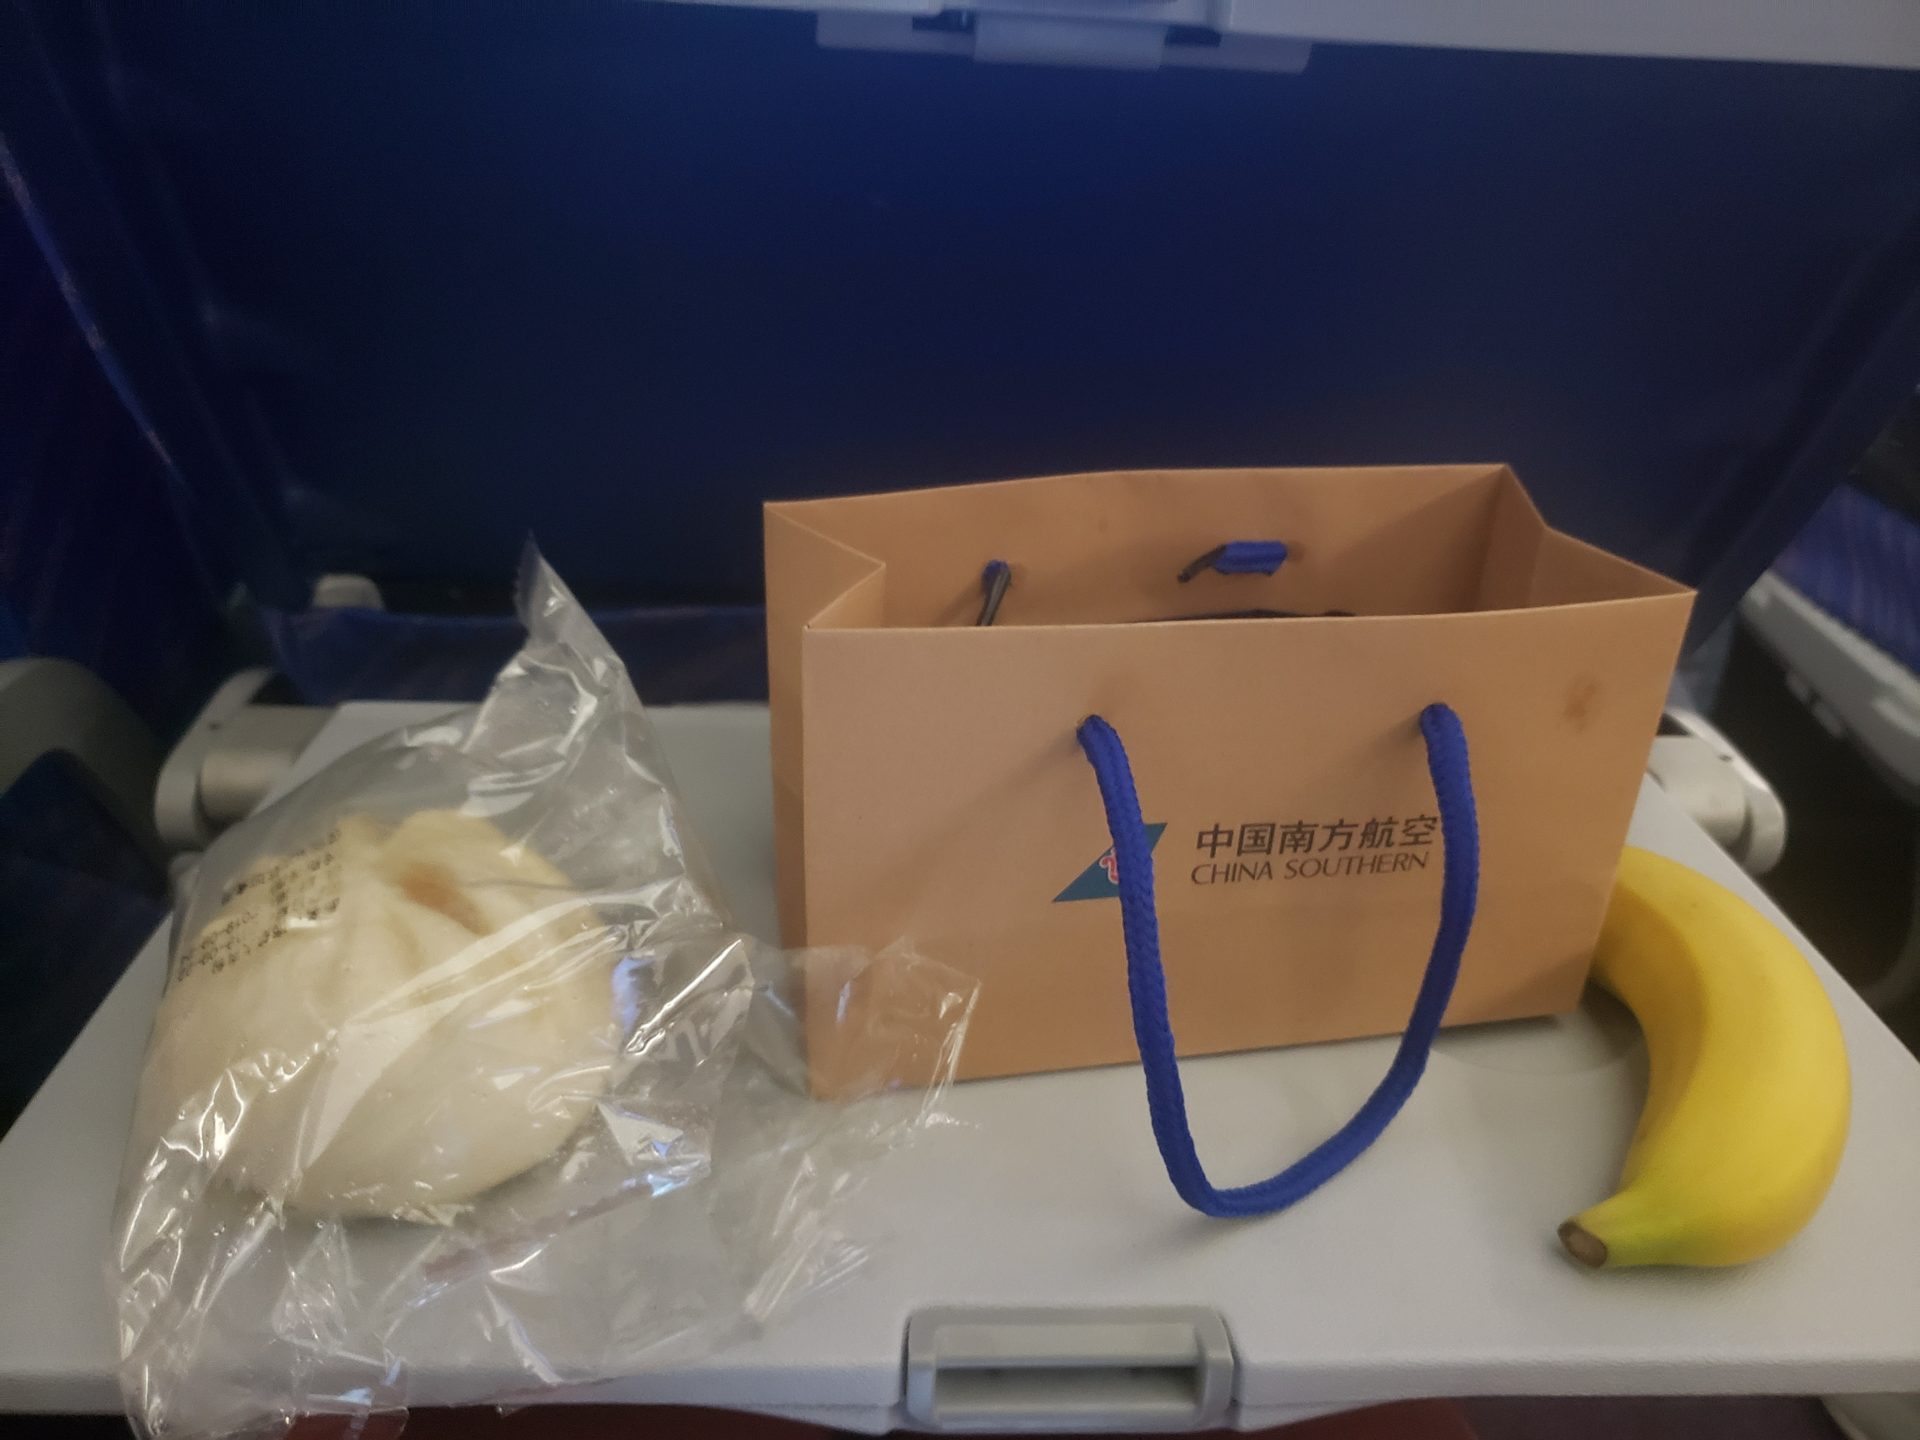 a bag and banana on a table